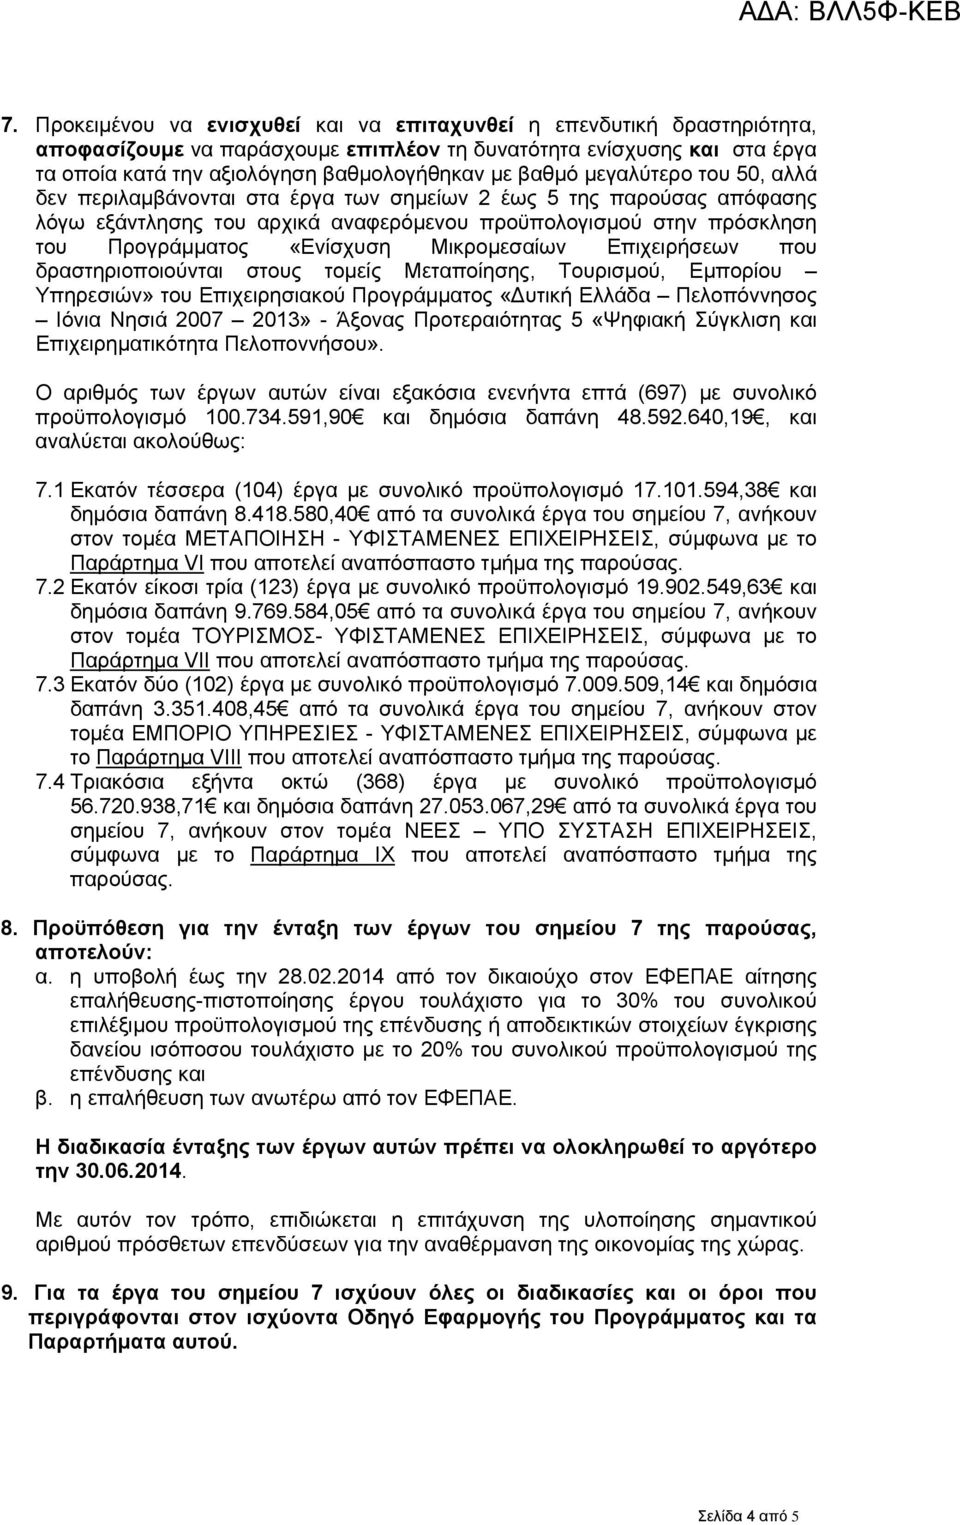 Μικρομεσαίων Επιχειρήσεων που δραστηριοποιούνται στους τομείς Μεταποίησης, Τουρισμού, Εμπορίου Υπηρεσιών» του Επιχειρησιακού Προγράμματος «Δυτική Ελλάδα Πελοπόννησος Ιόνια Νησιά 2007 2013» - Άξονας